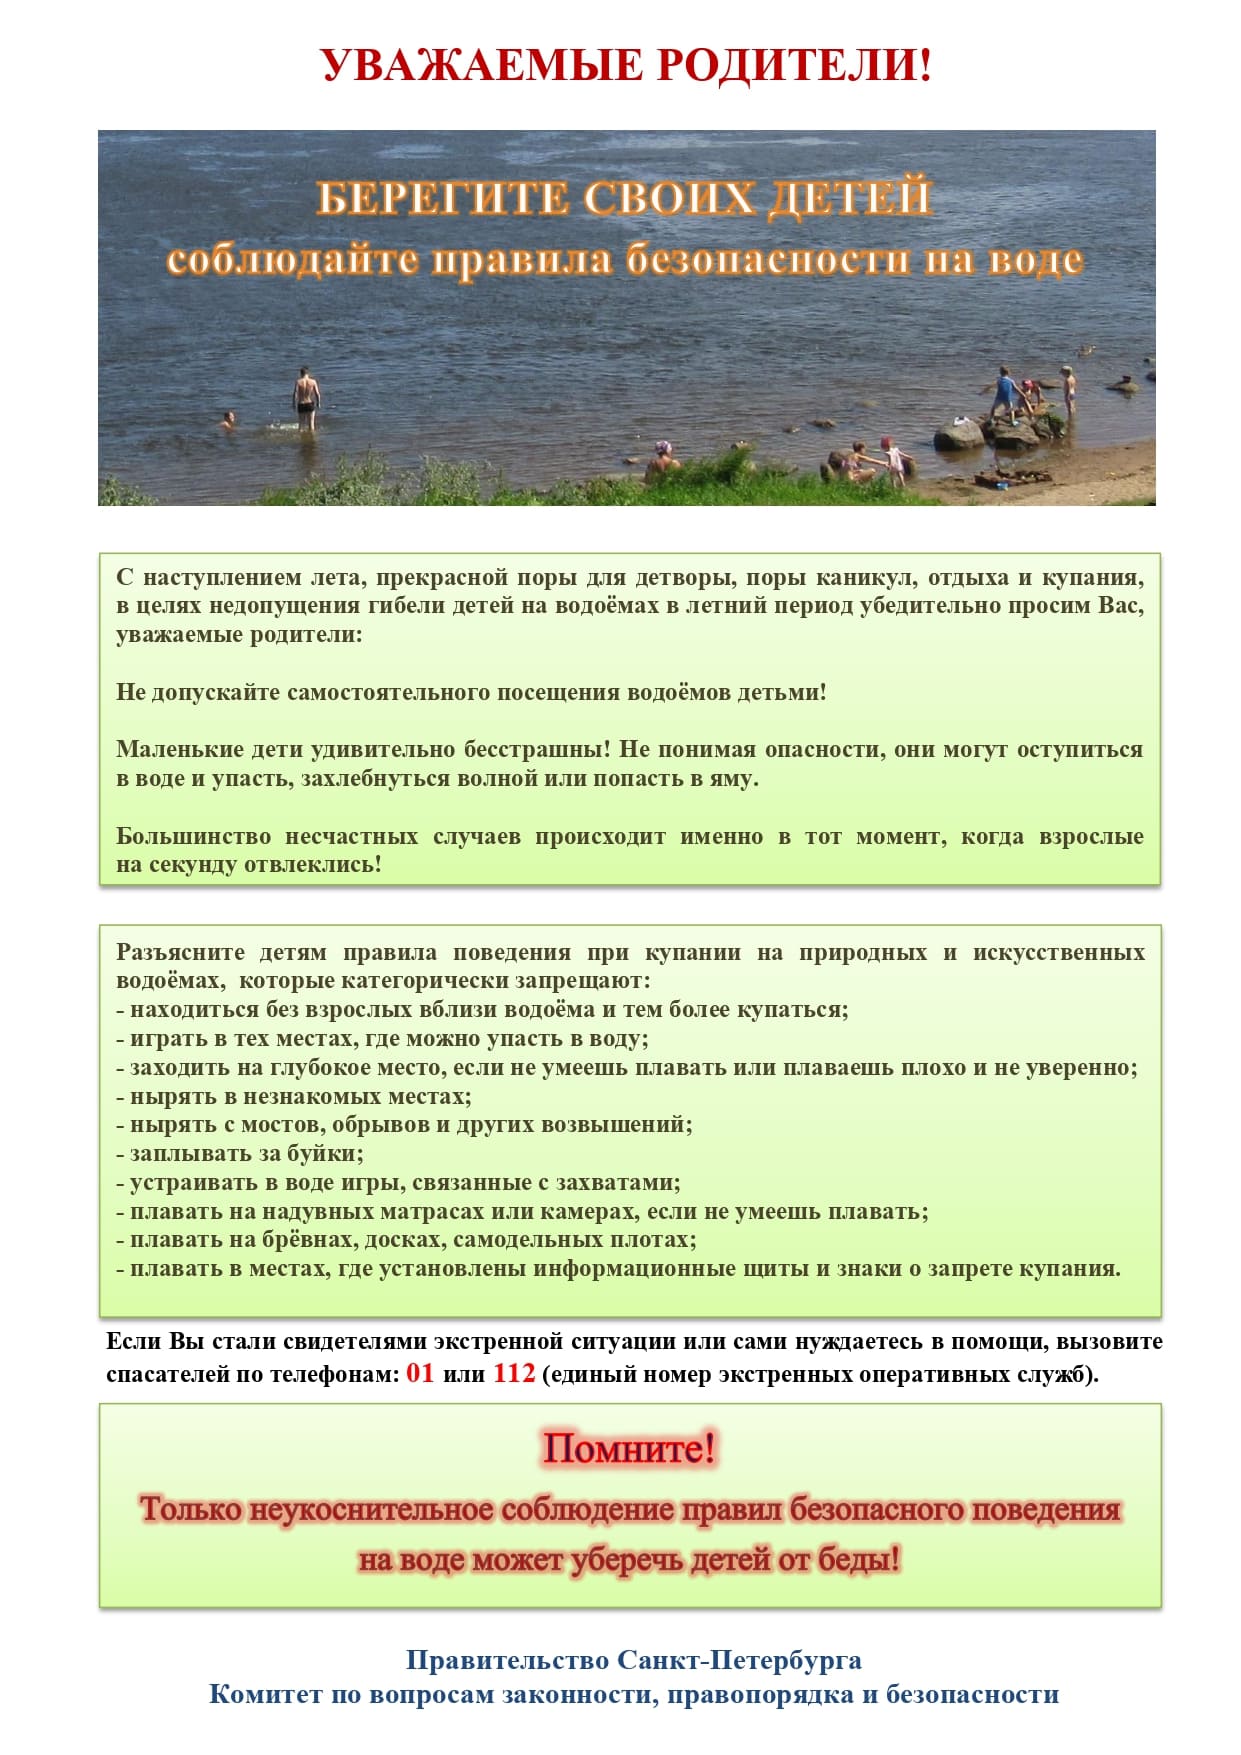 Памятка родителям по запрету купания в неотведенных местах 2021 page 0001 1